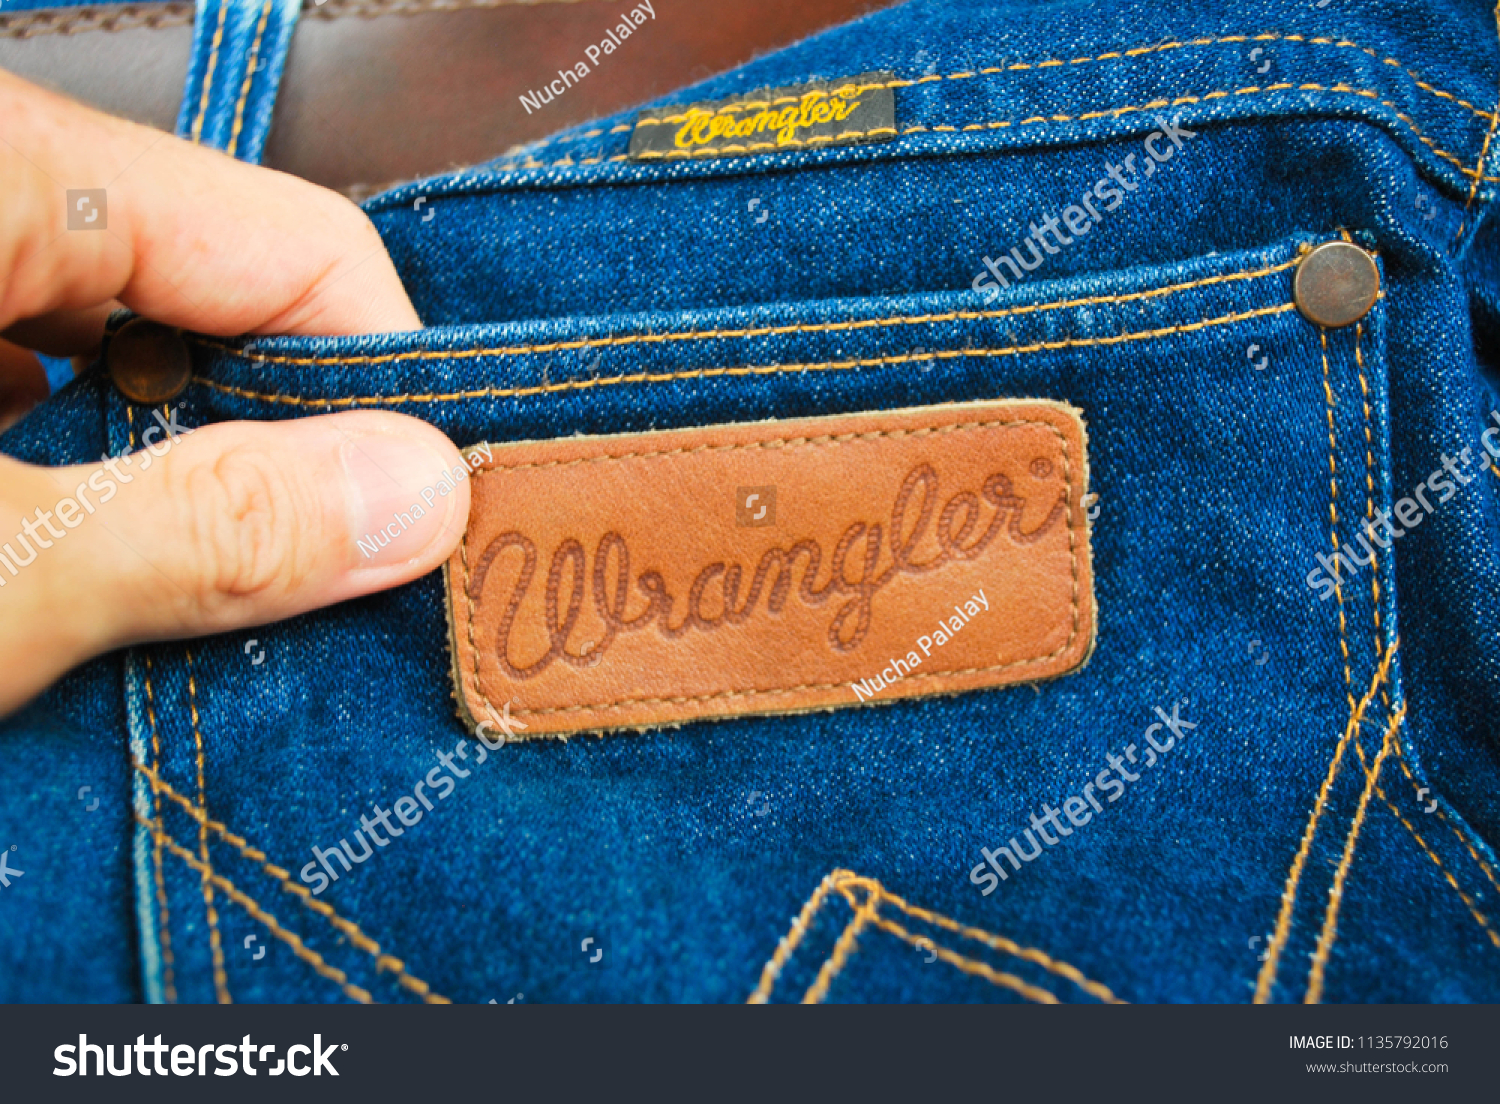 Wrangler Vintage Jeans Outlet, Save 52% 